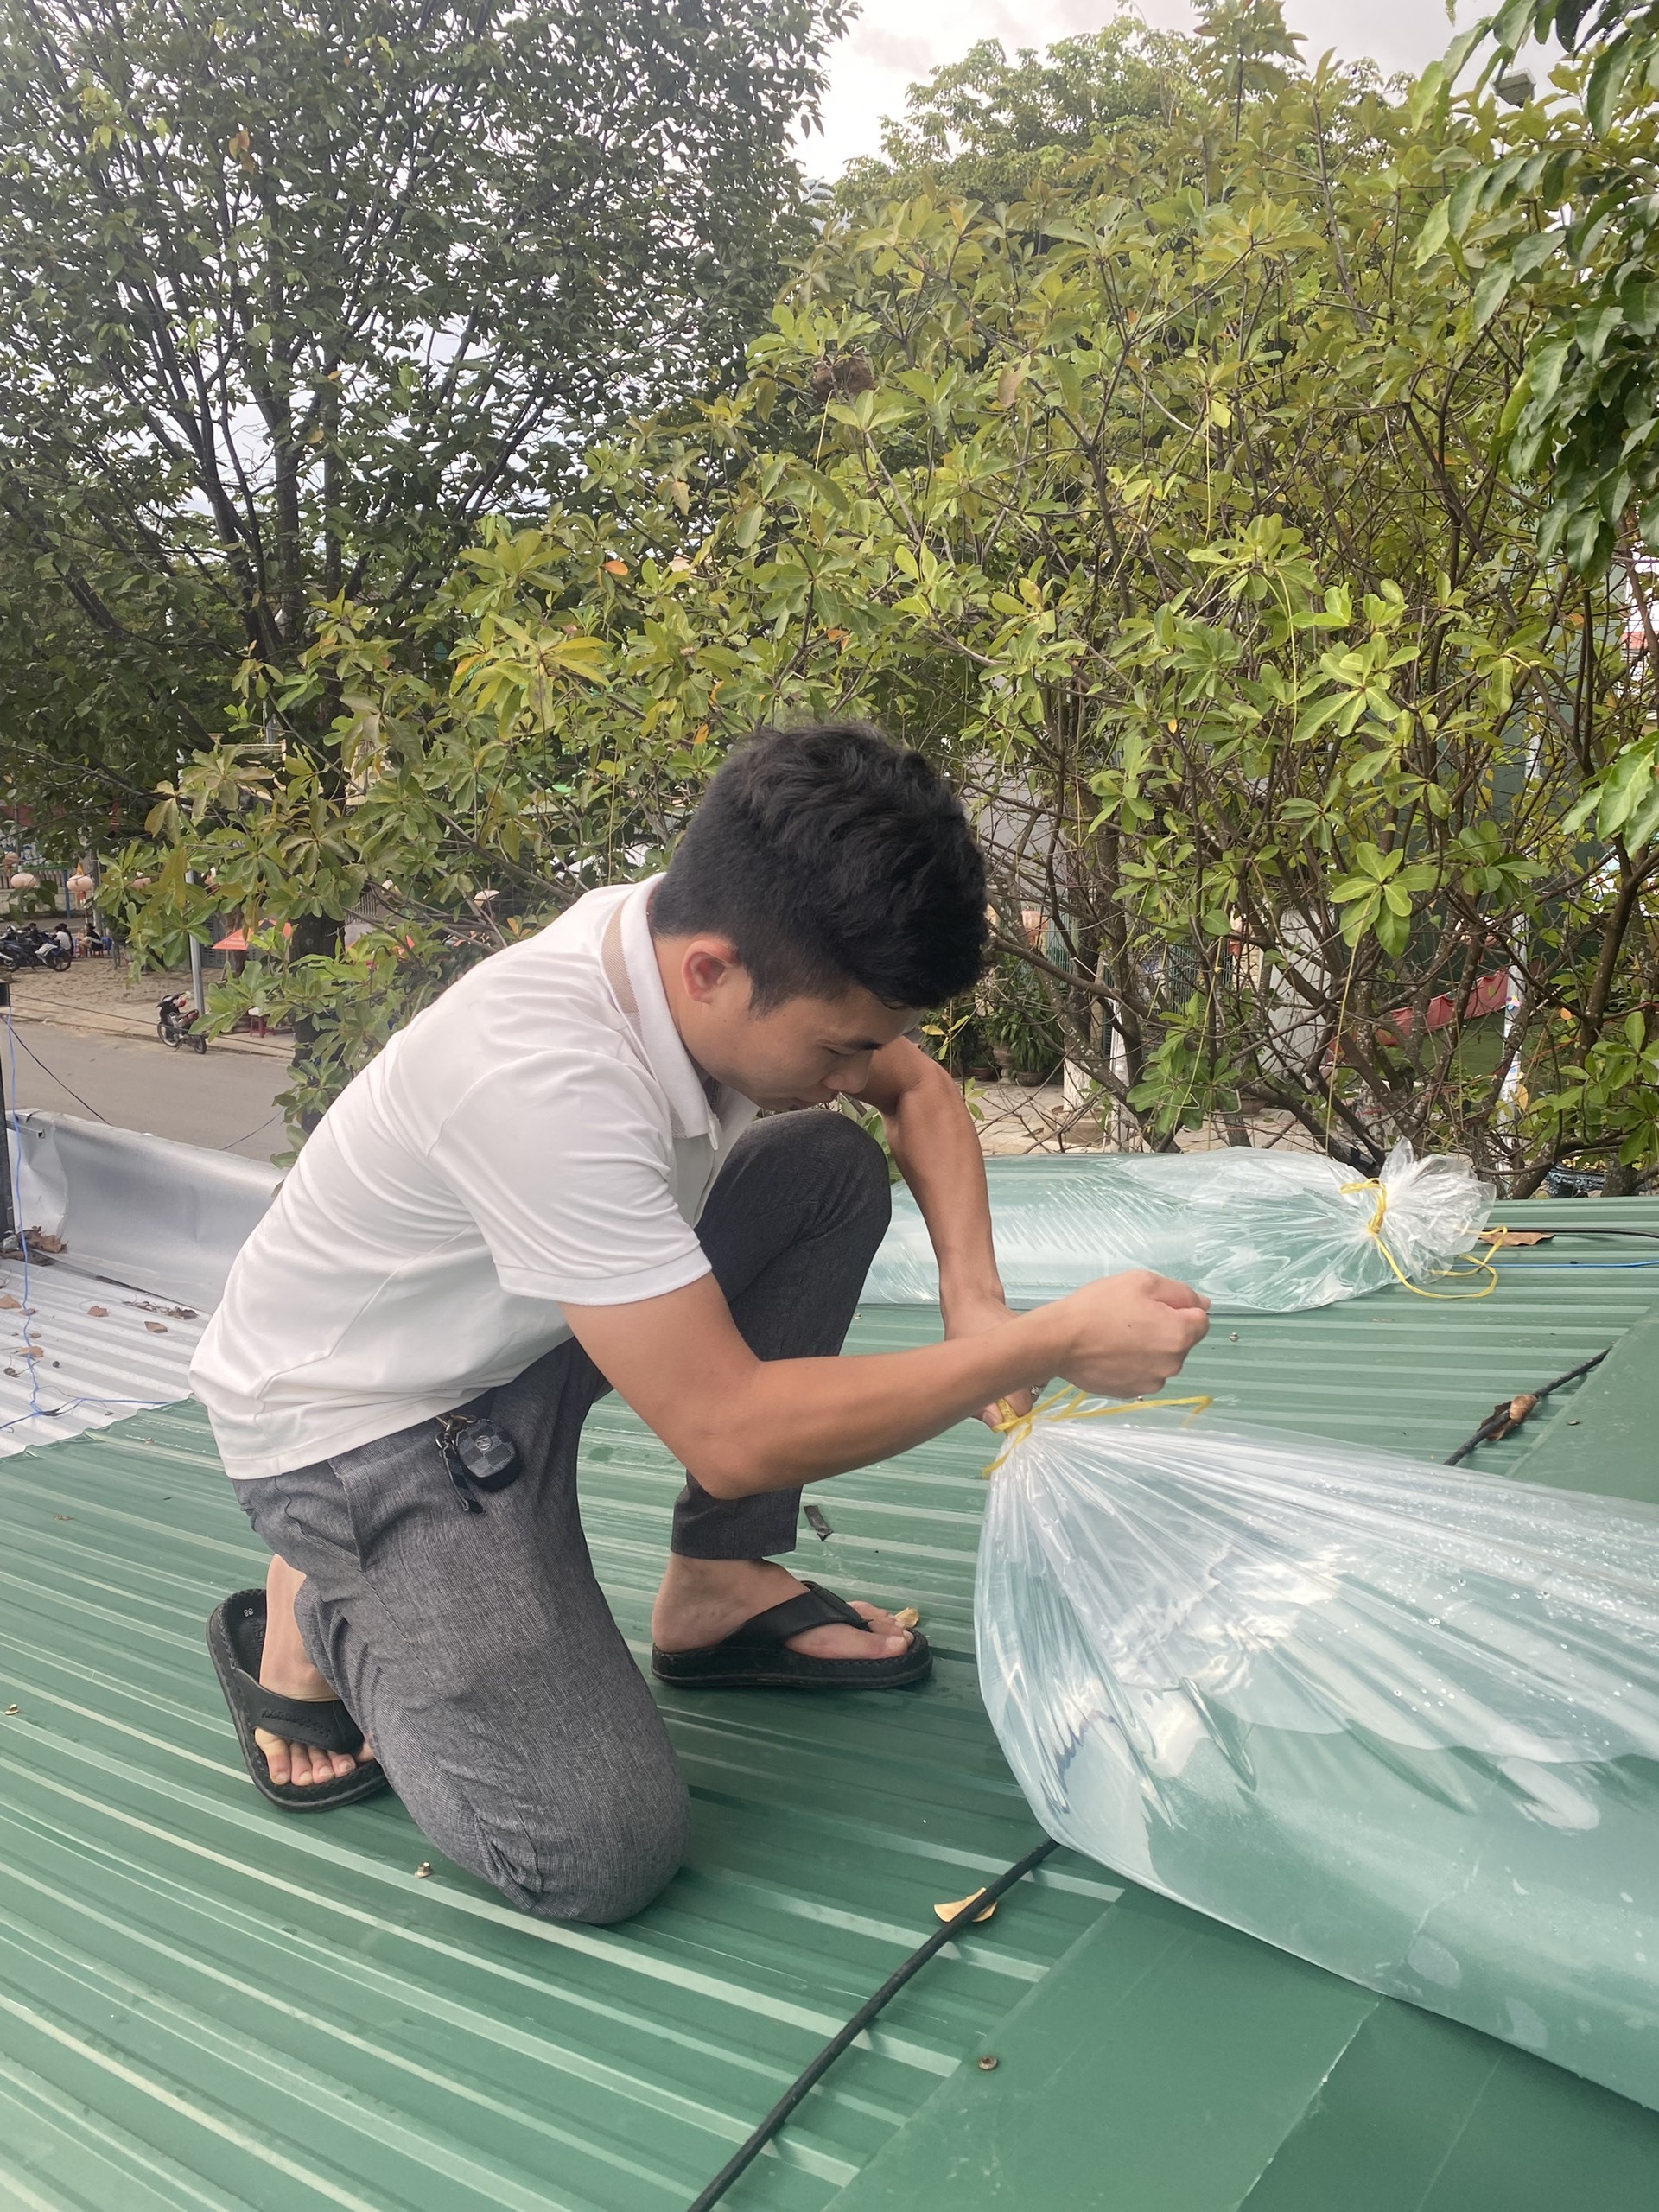 Anh Phạm Đình Hải ở phường Trương Quang Trọng, TP. Quảng Ngãi bơm nước vào bao để chằng phấn mái nhà.